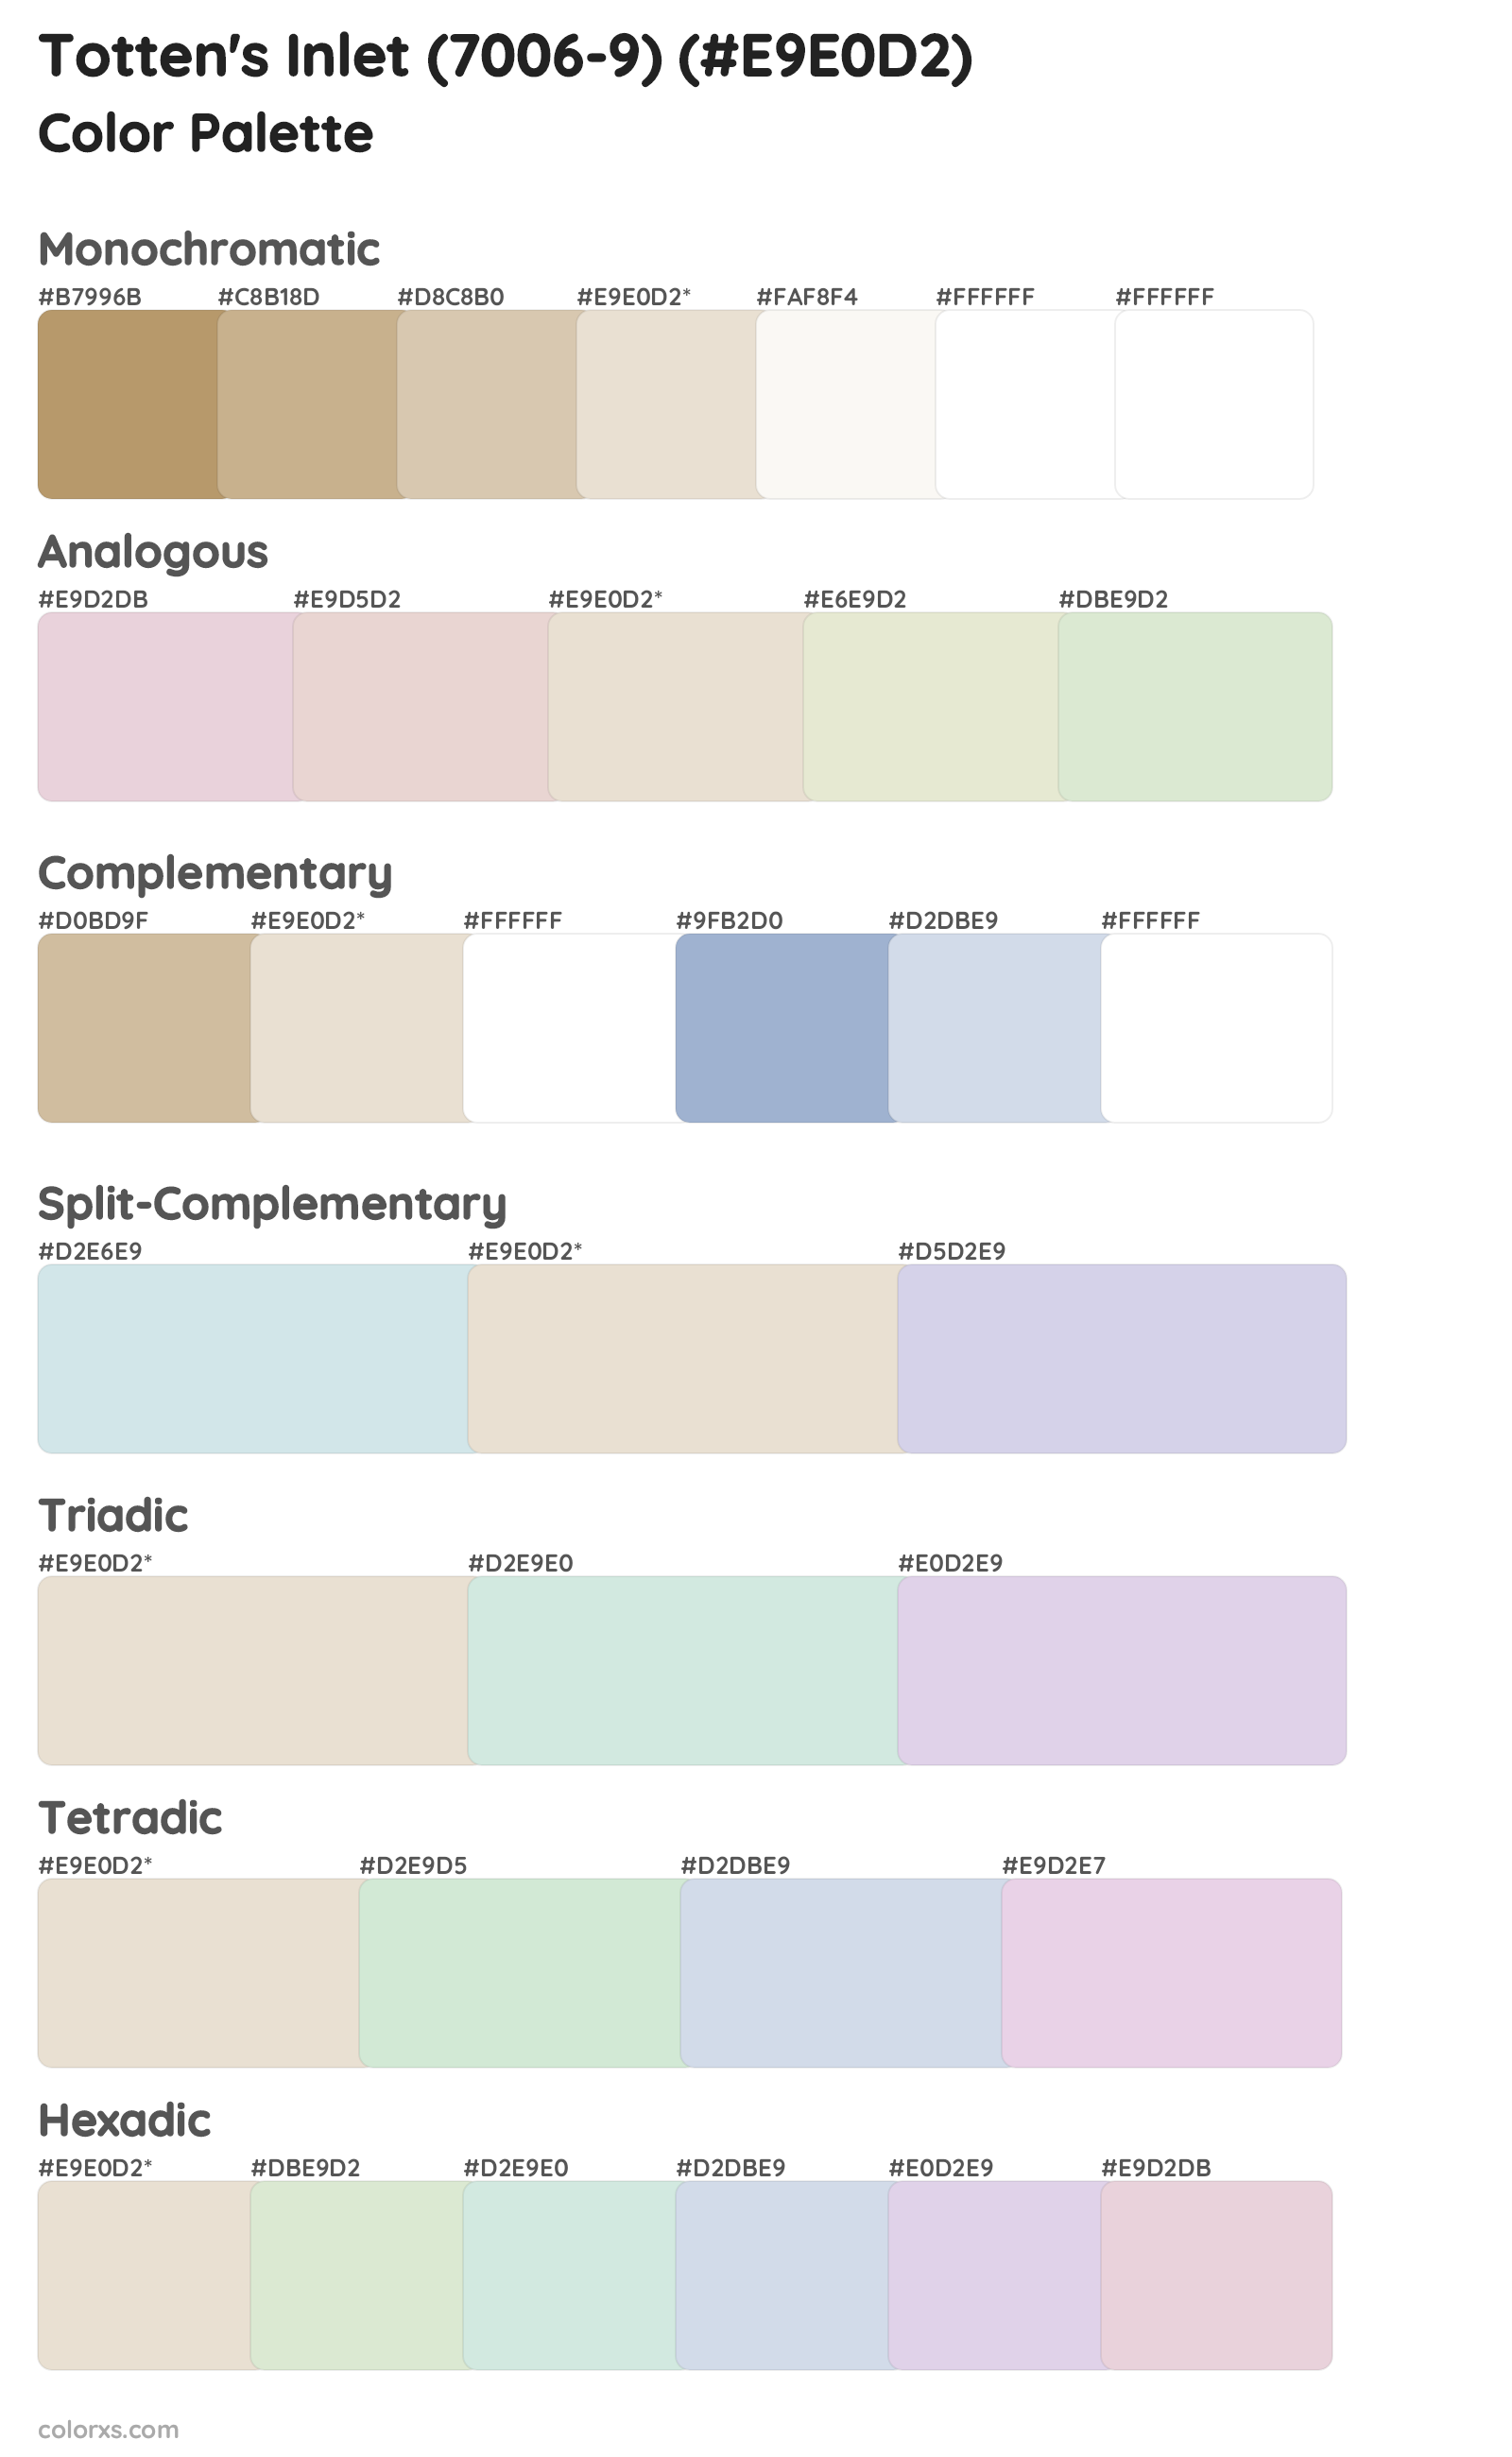 Totten's Inlet (7006-9) Color Scheme Palettes